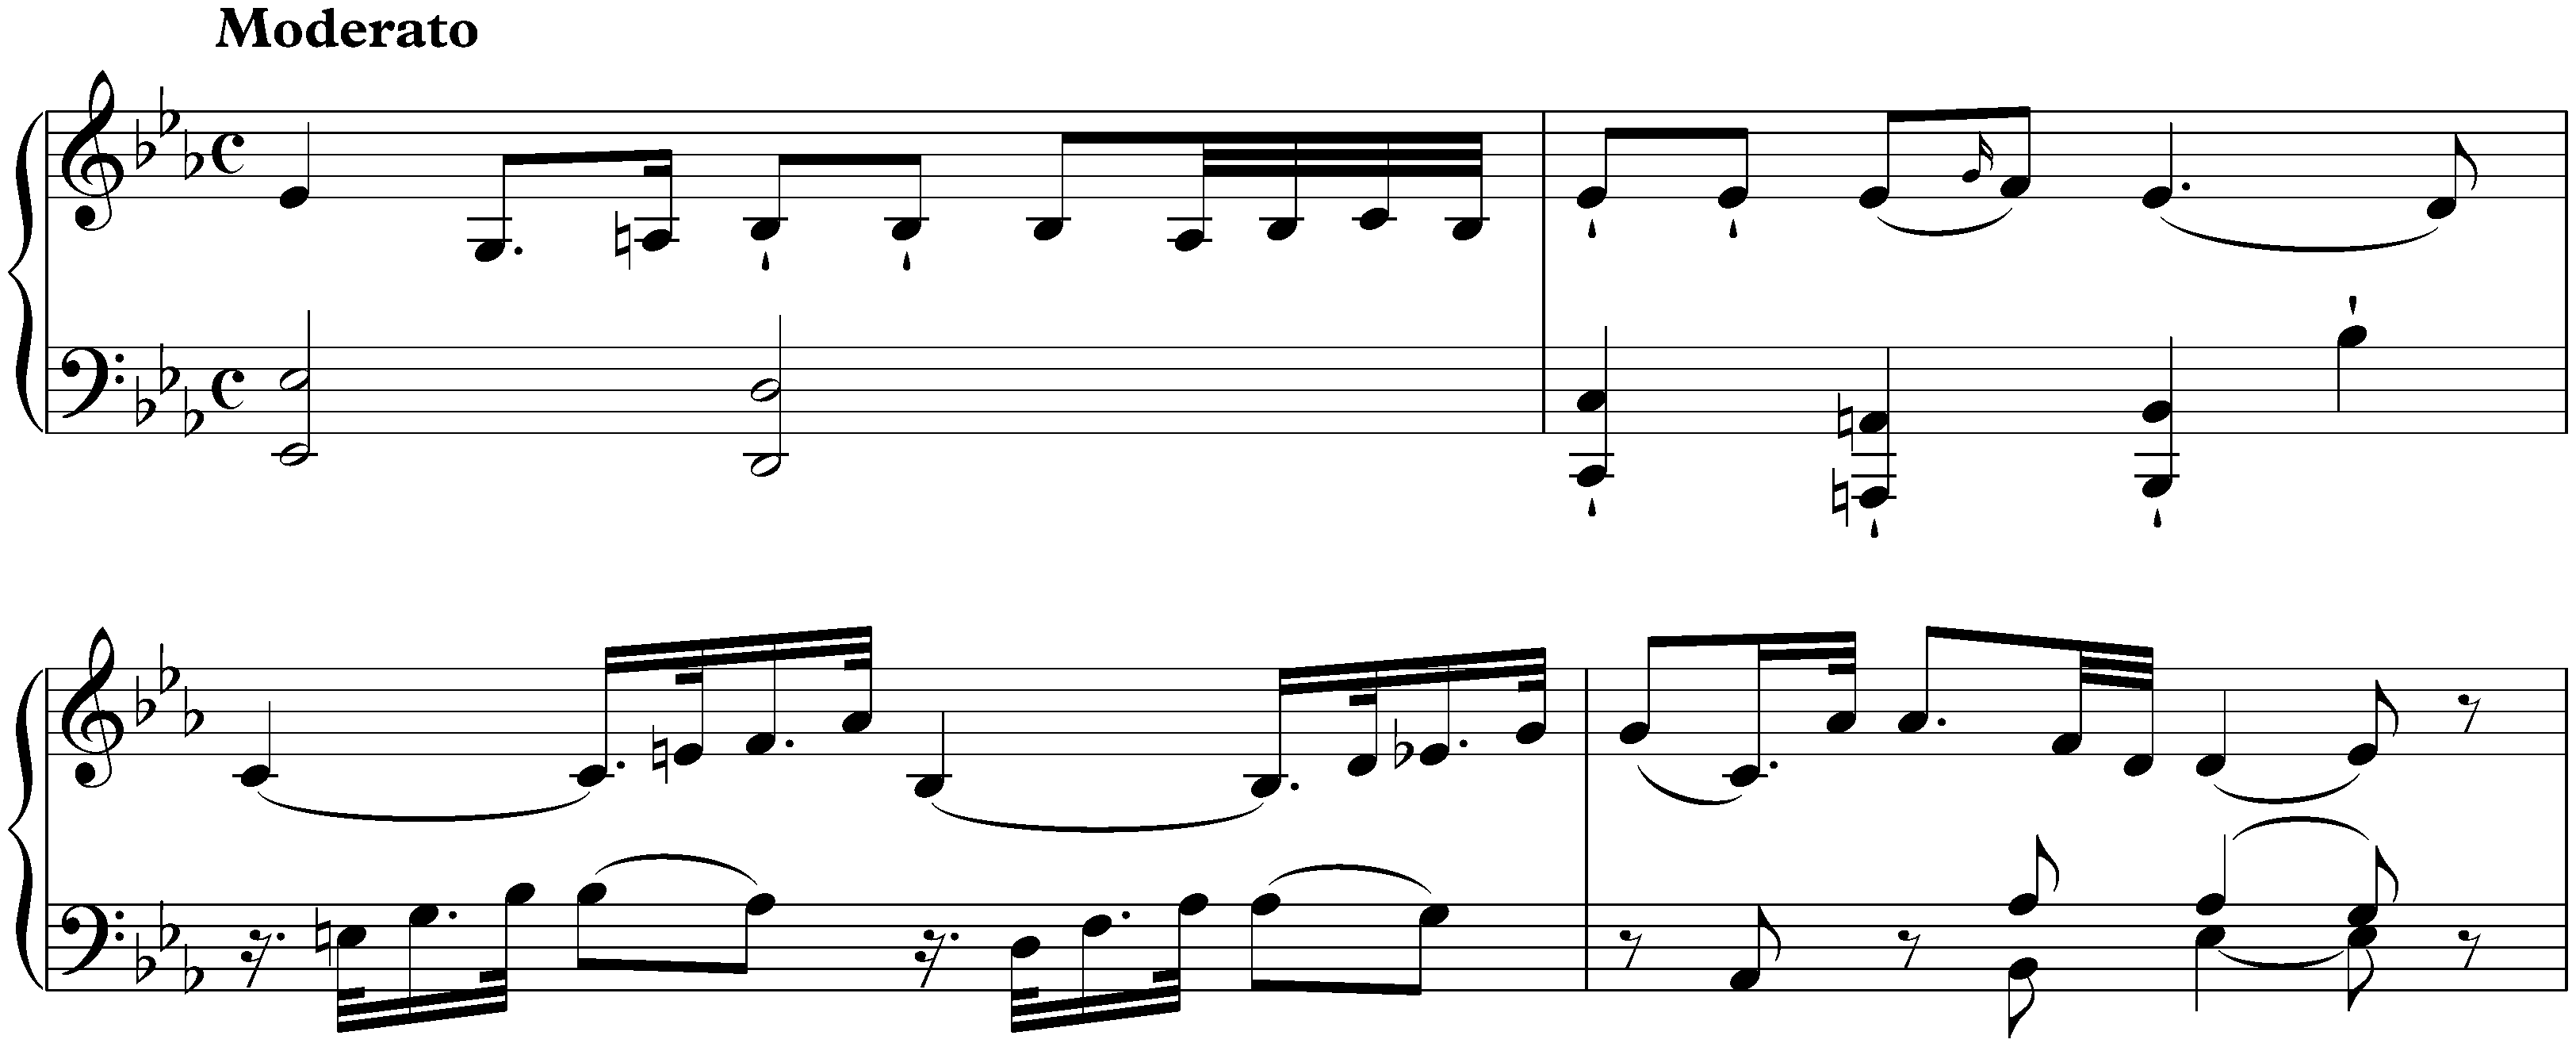 Sonata in E-flat major, Hob. XVI:25; 1. Moderato